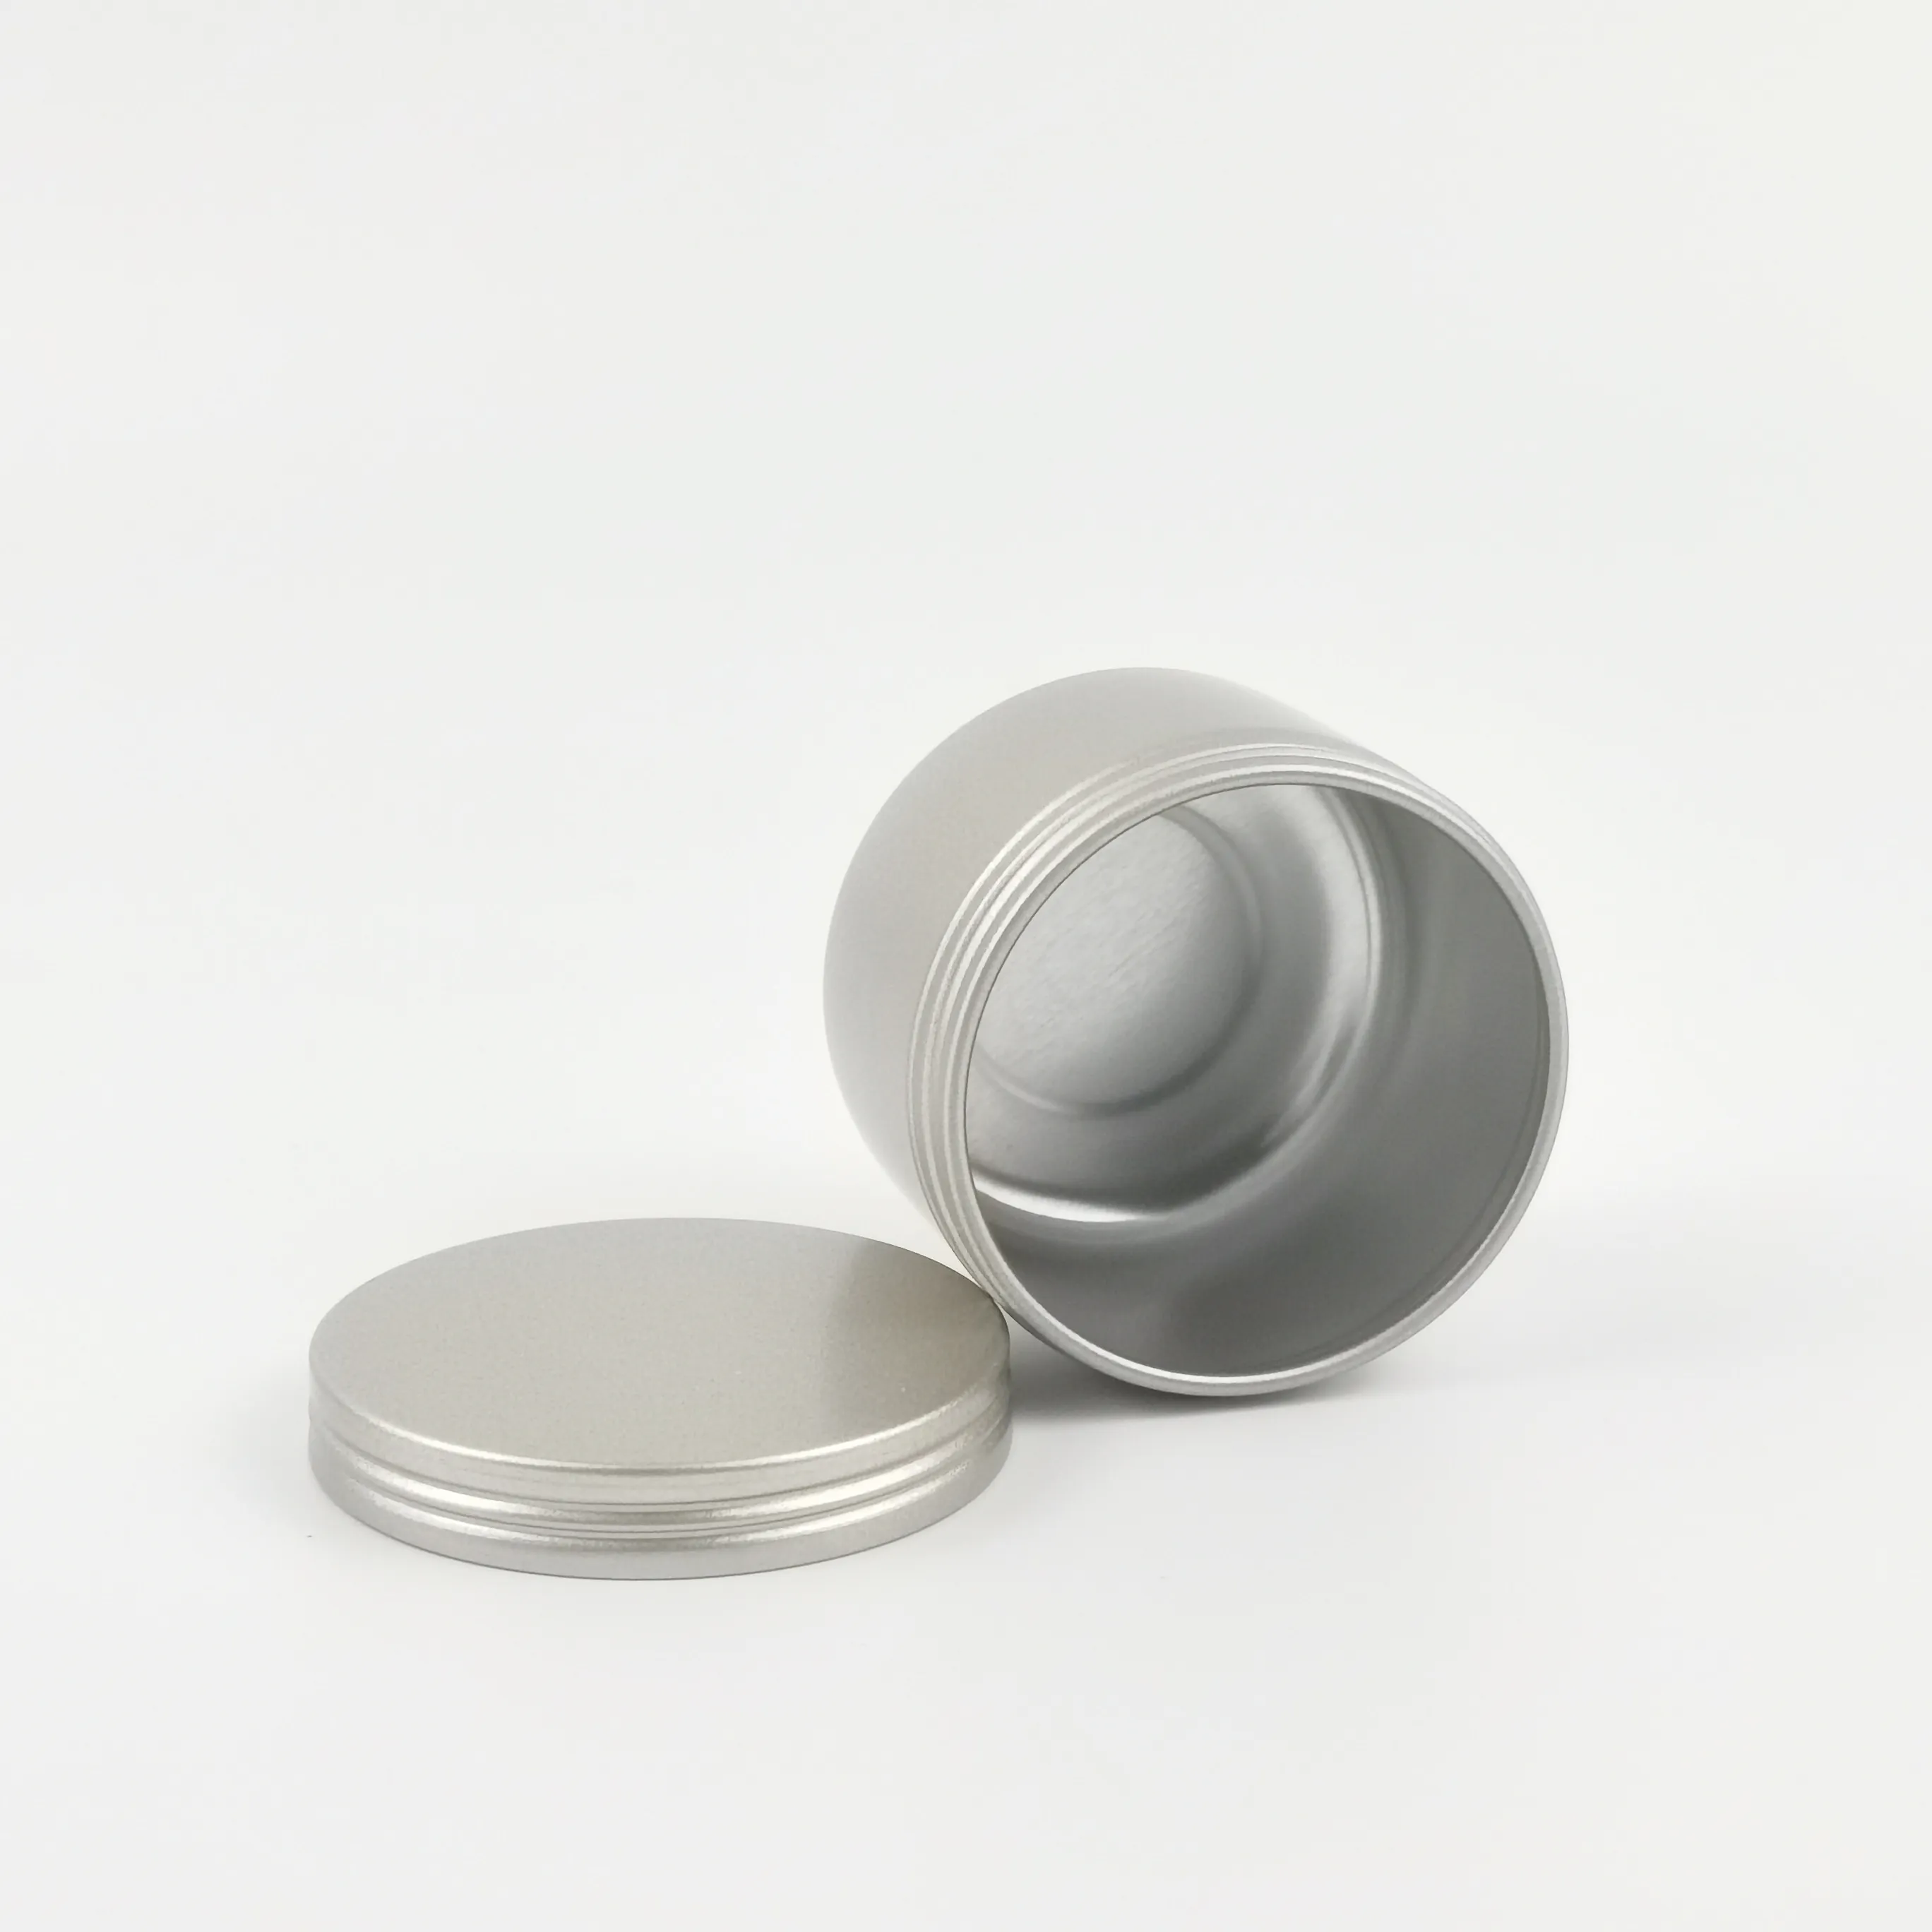 Wieder verwendbare hochwertige runde Behälter Metall Aluminium Kosmetik creme Kerzen glas mit Schraub deckel